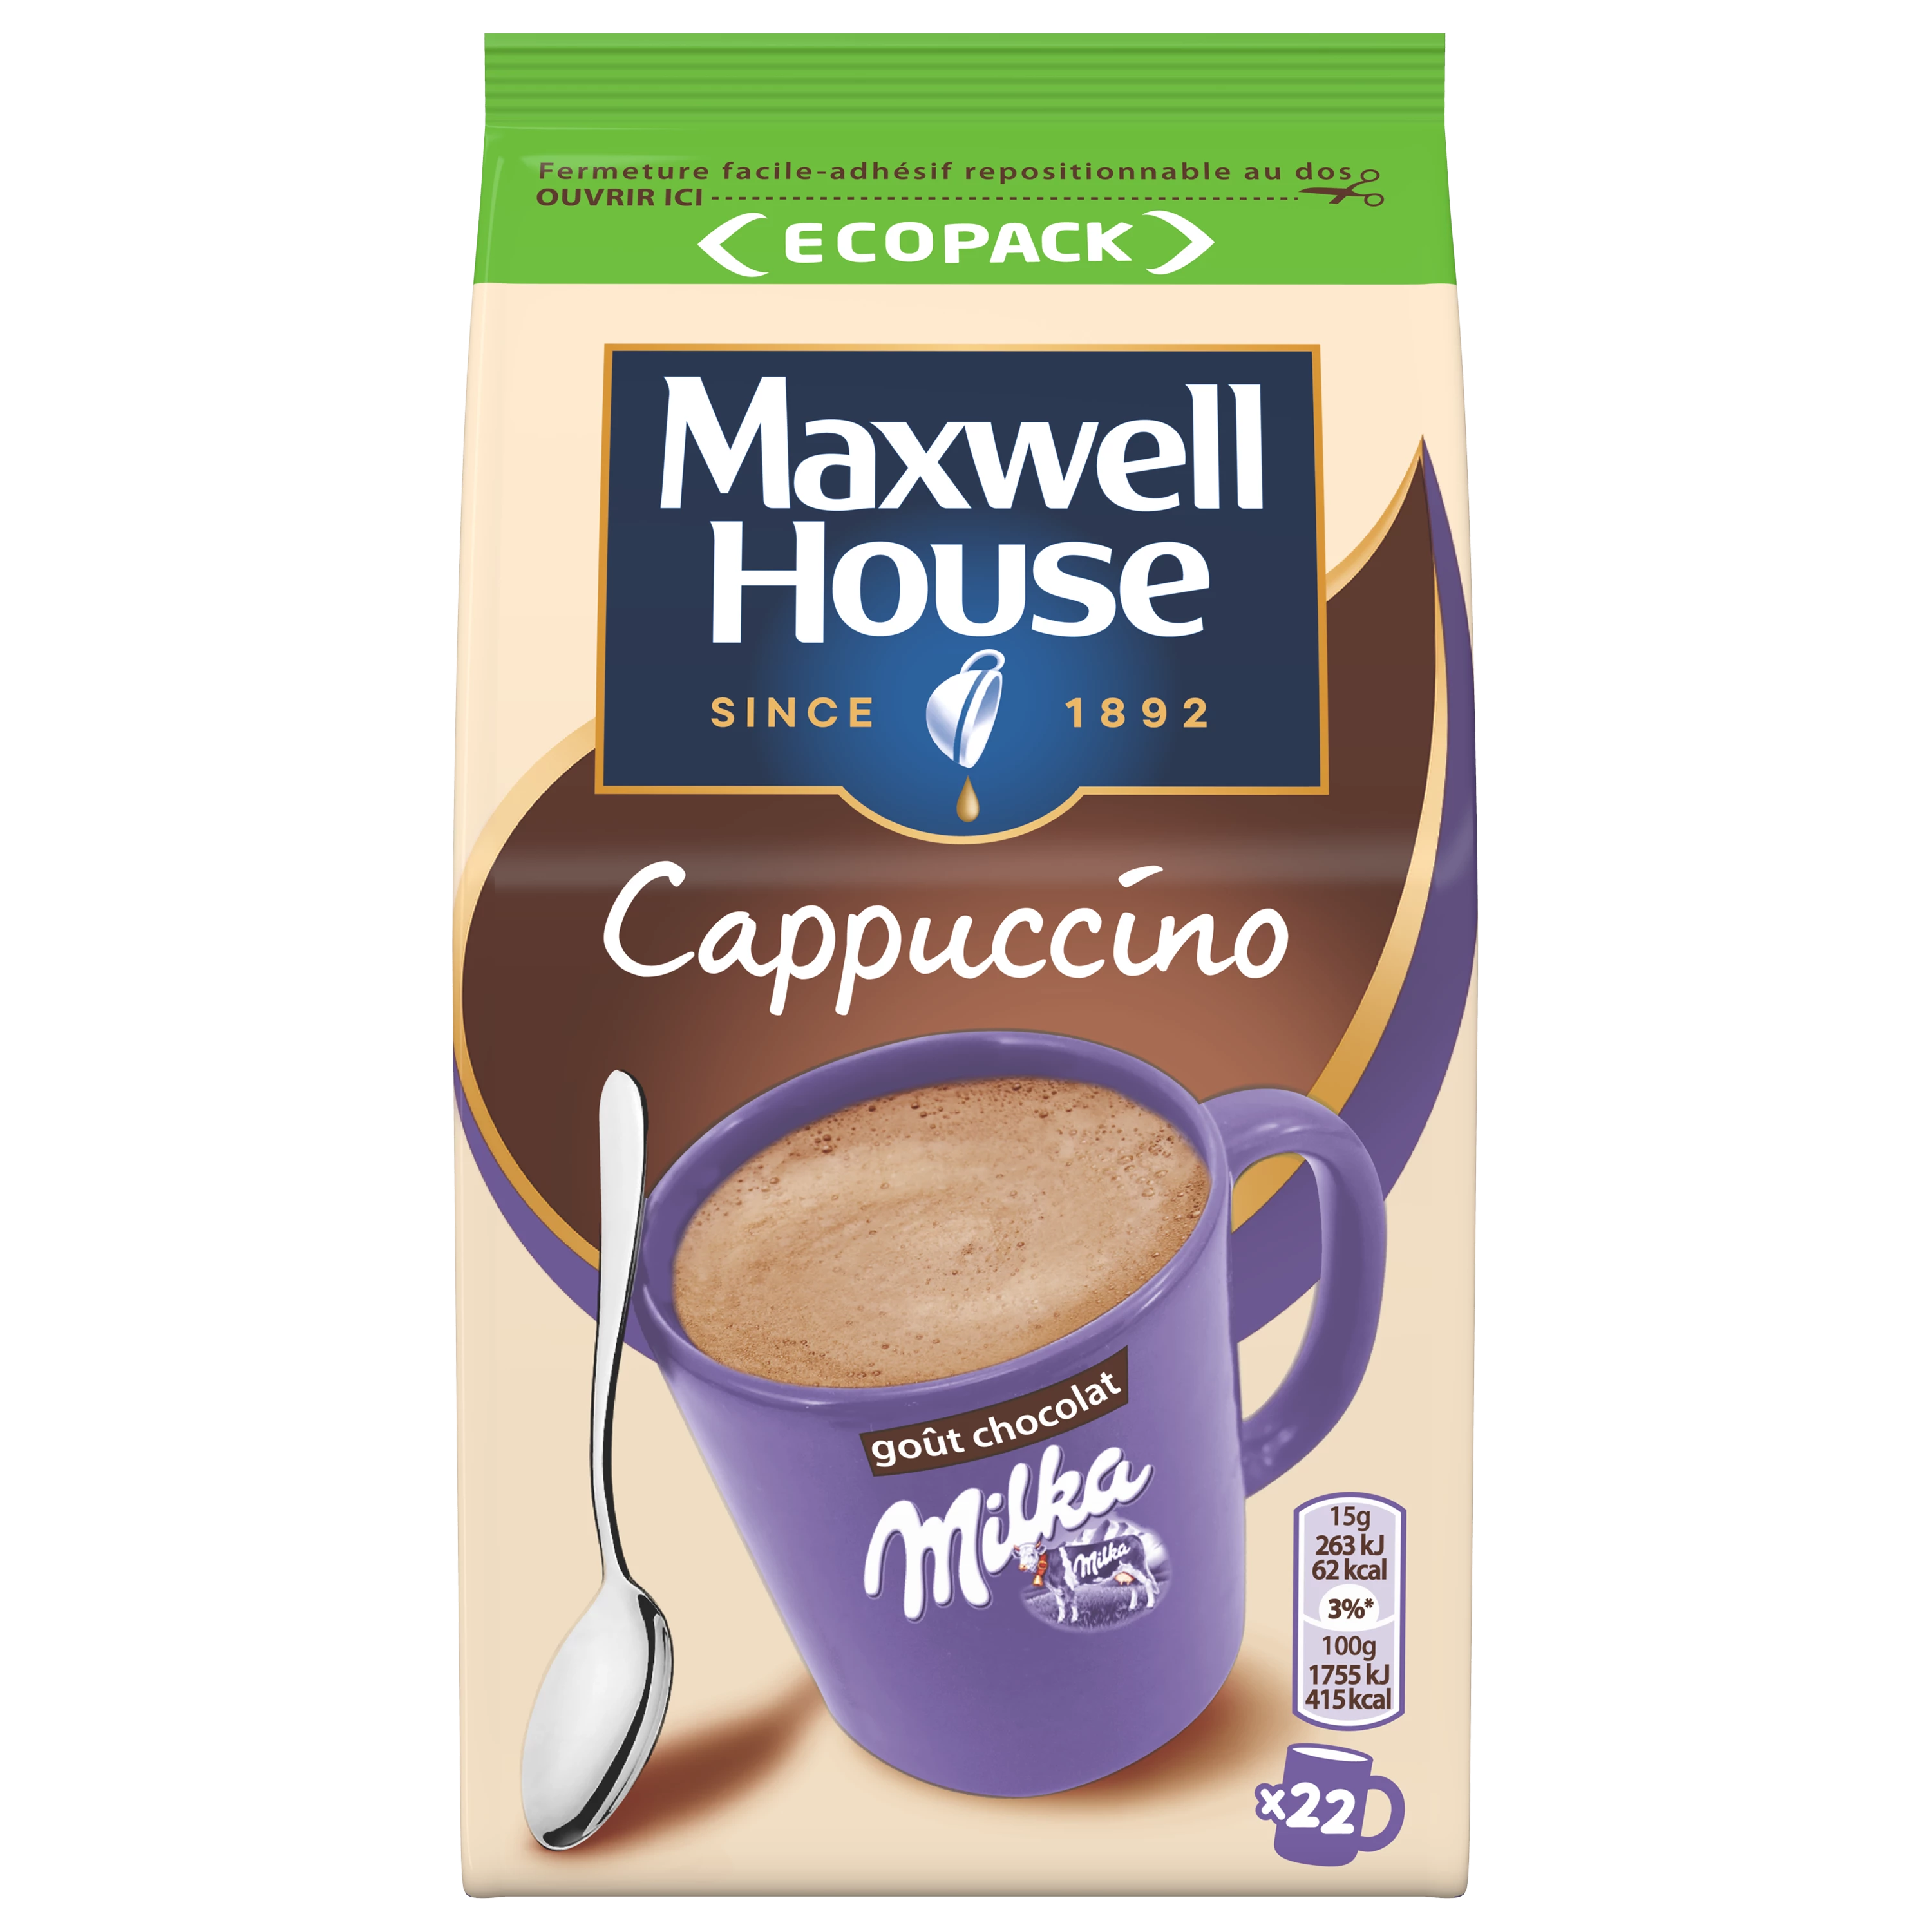 Cà phê hòa tan Milka Cappuccino; 335g - MAXWELL HOUSE